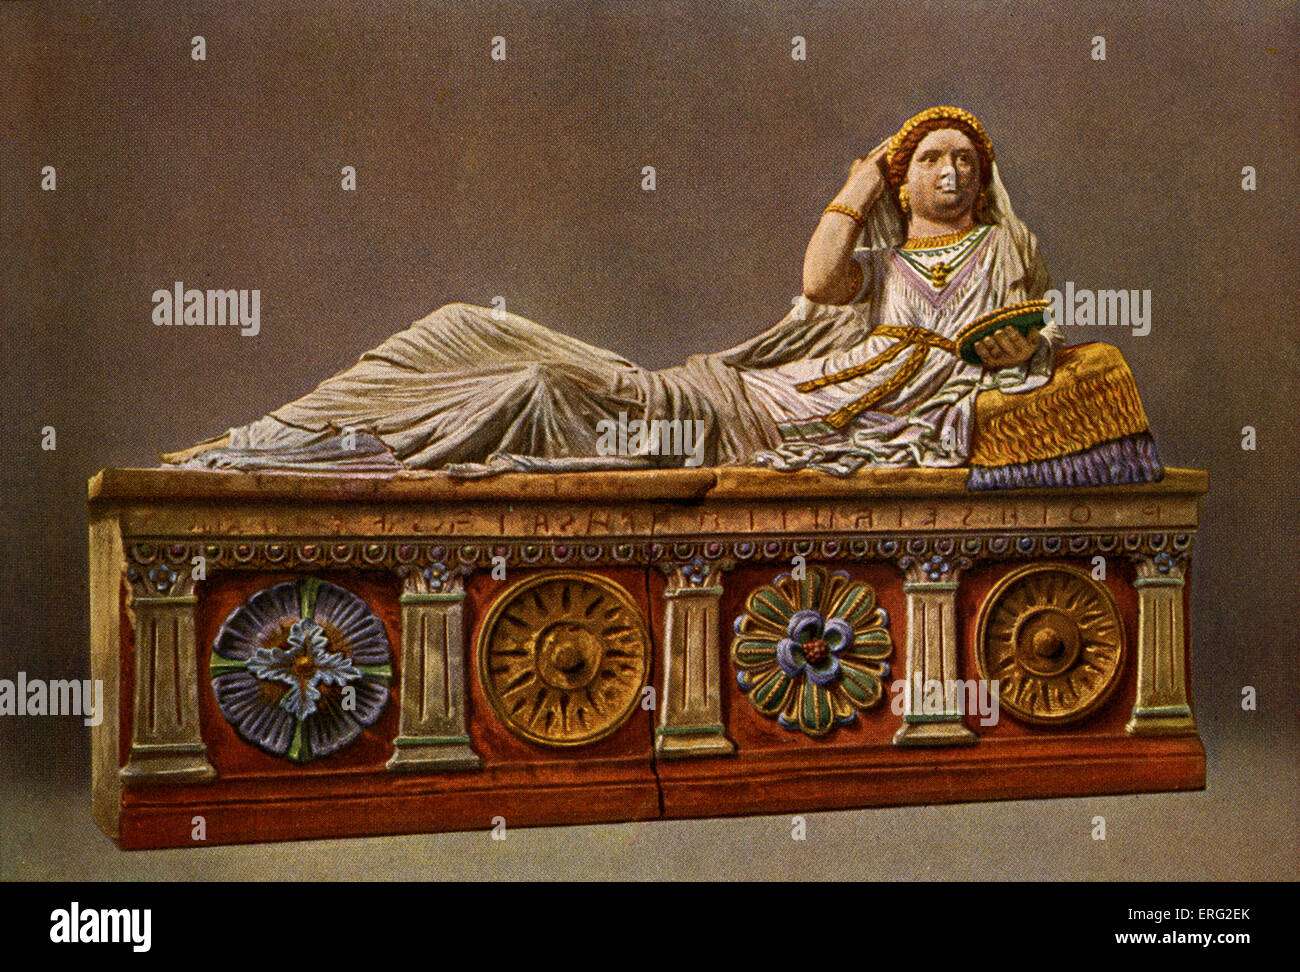 Pintado sarcófago etrusco, mostrando una mujer recostada con patrones decorativos y columnas. Encontrados en Chiusi. Foto de stock